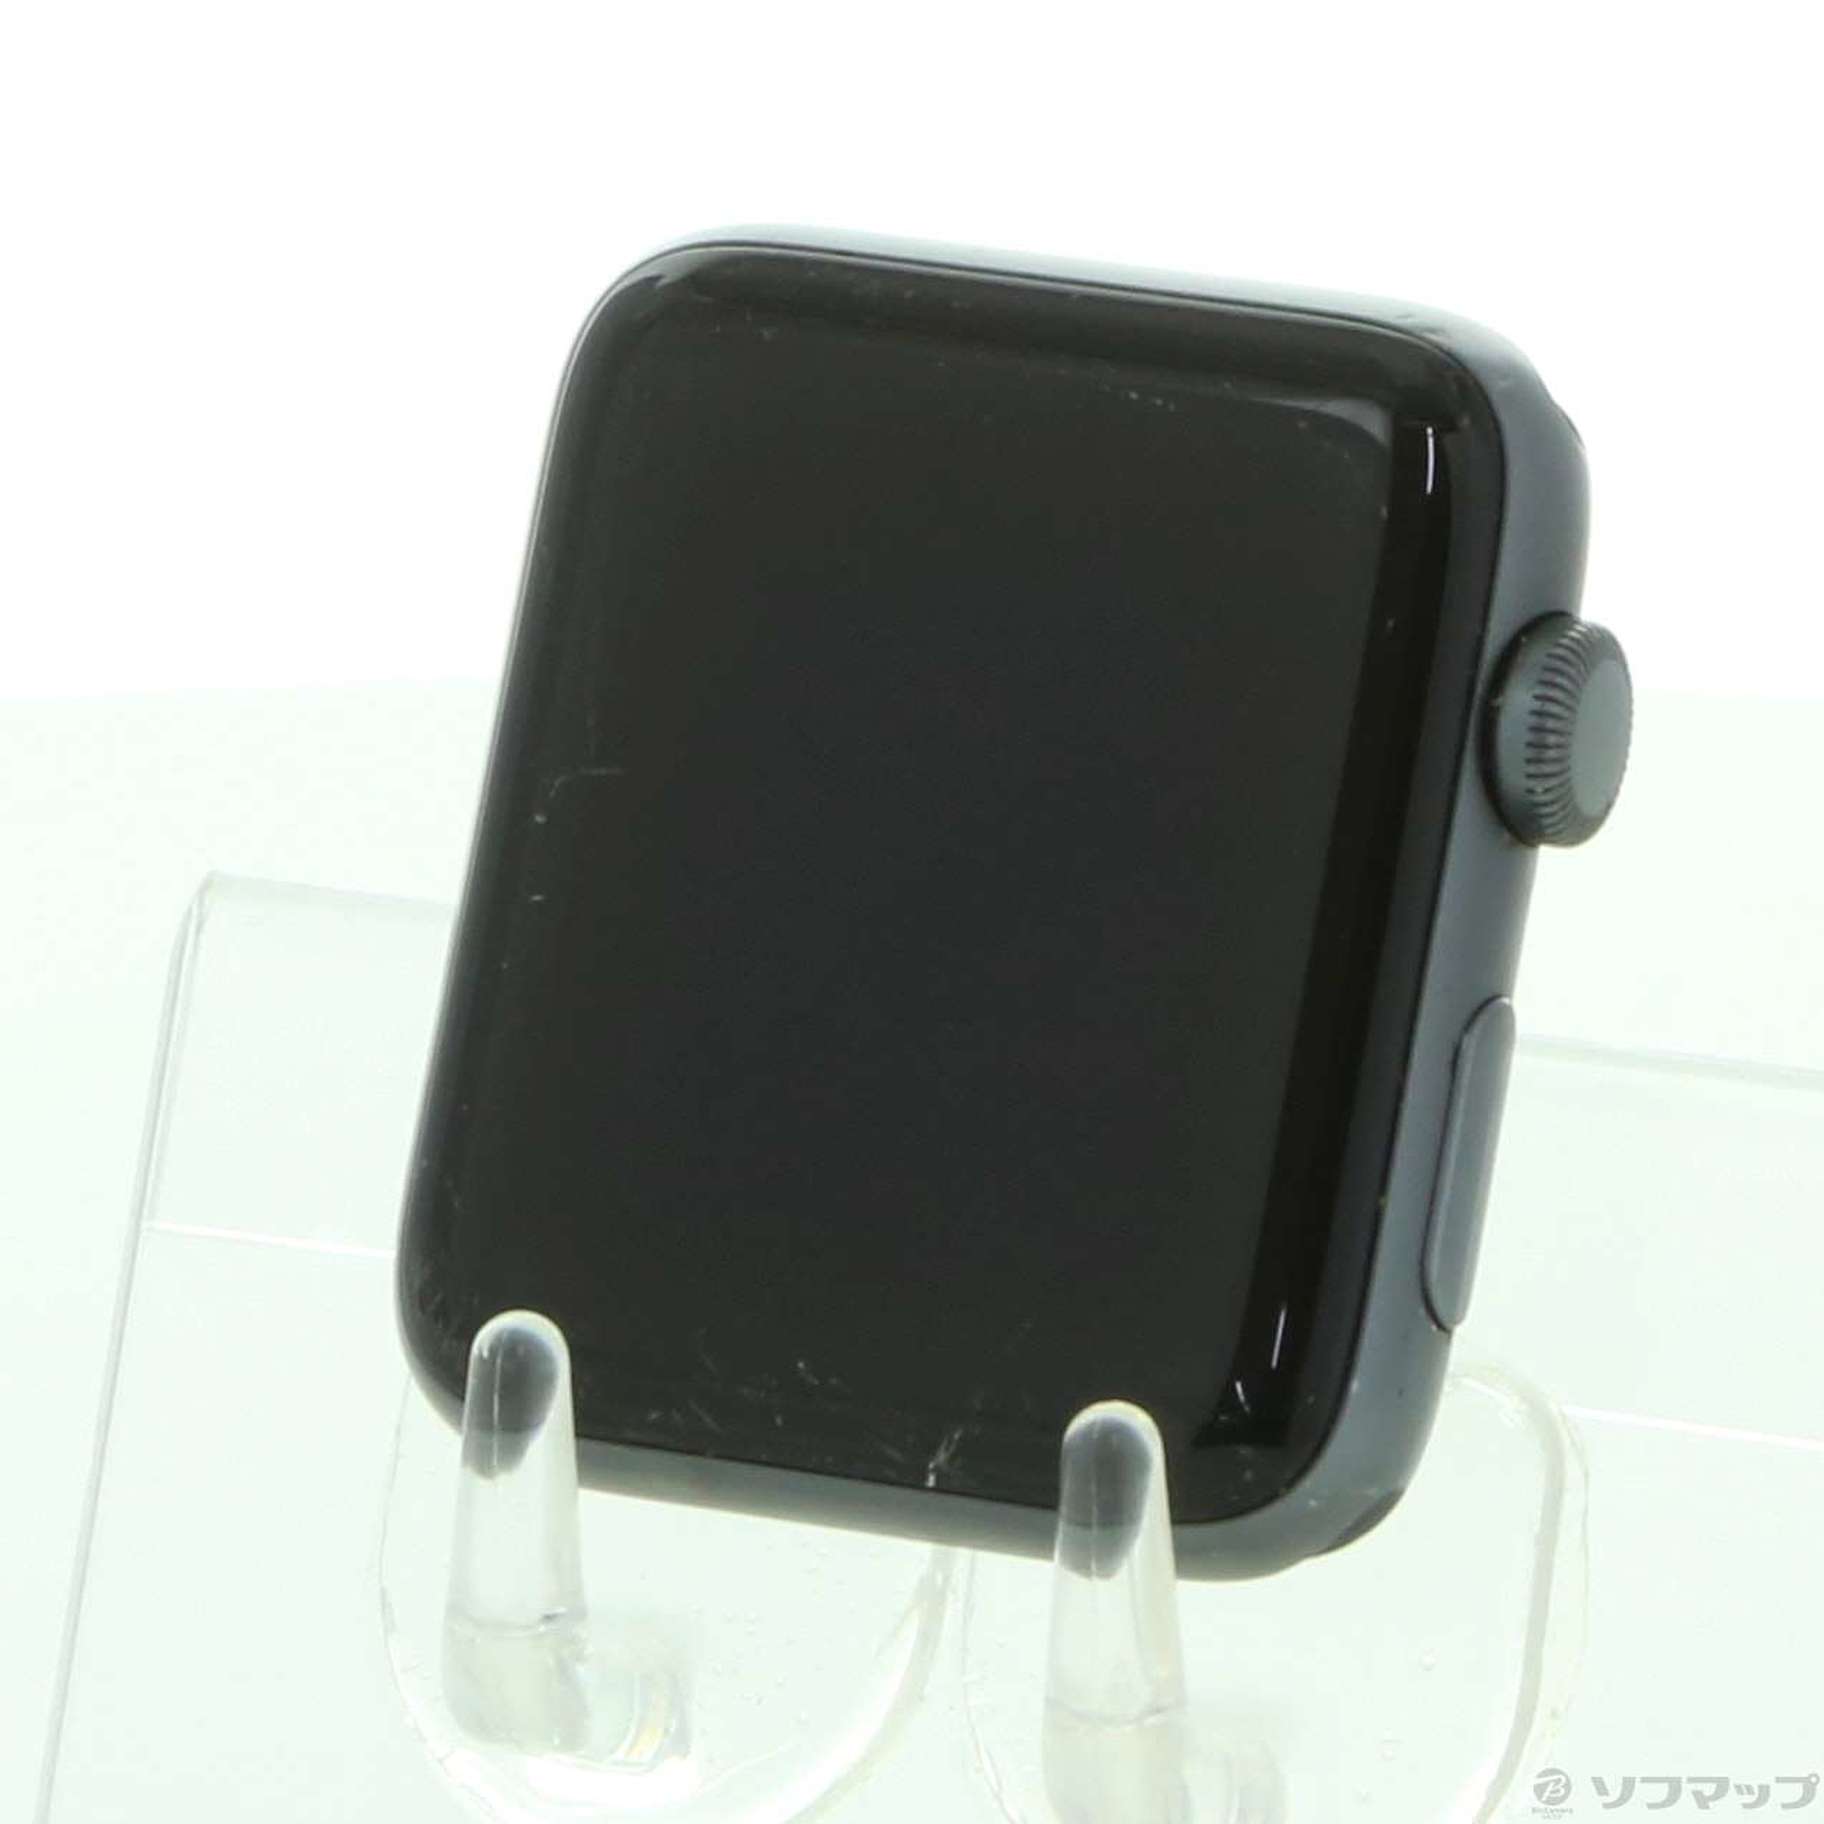 中古】Apple Watch Series 2 42mm スペースグレイアルミニウムケース